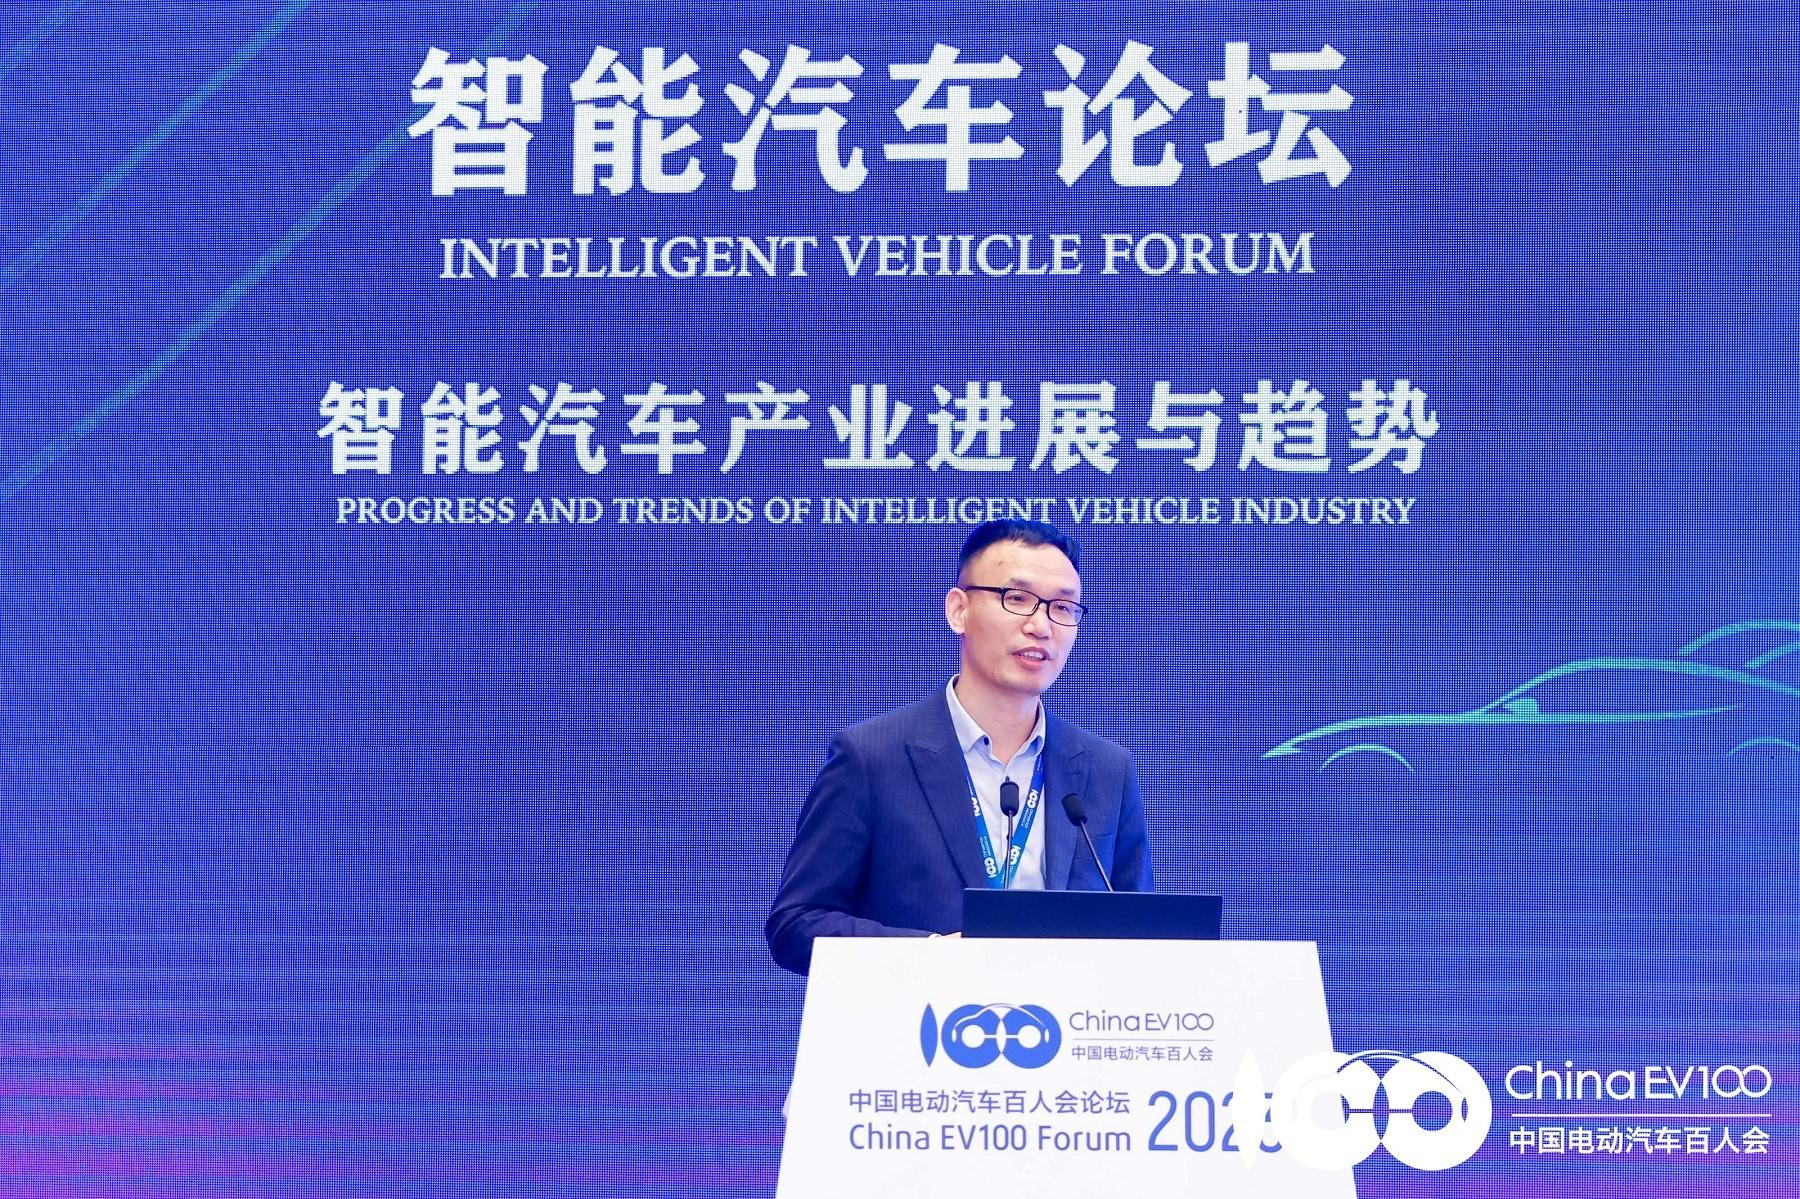 D'China Electric Vehicle 100 Meeting gouf erfollegräich ofgehalen, an HUAWEI CLOUD fördert d'Entwécklung vun der autonomer Fuereindustrie mat AI Technologie